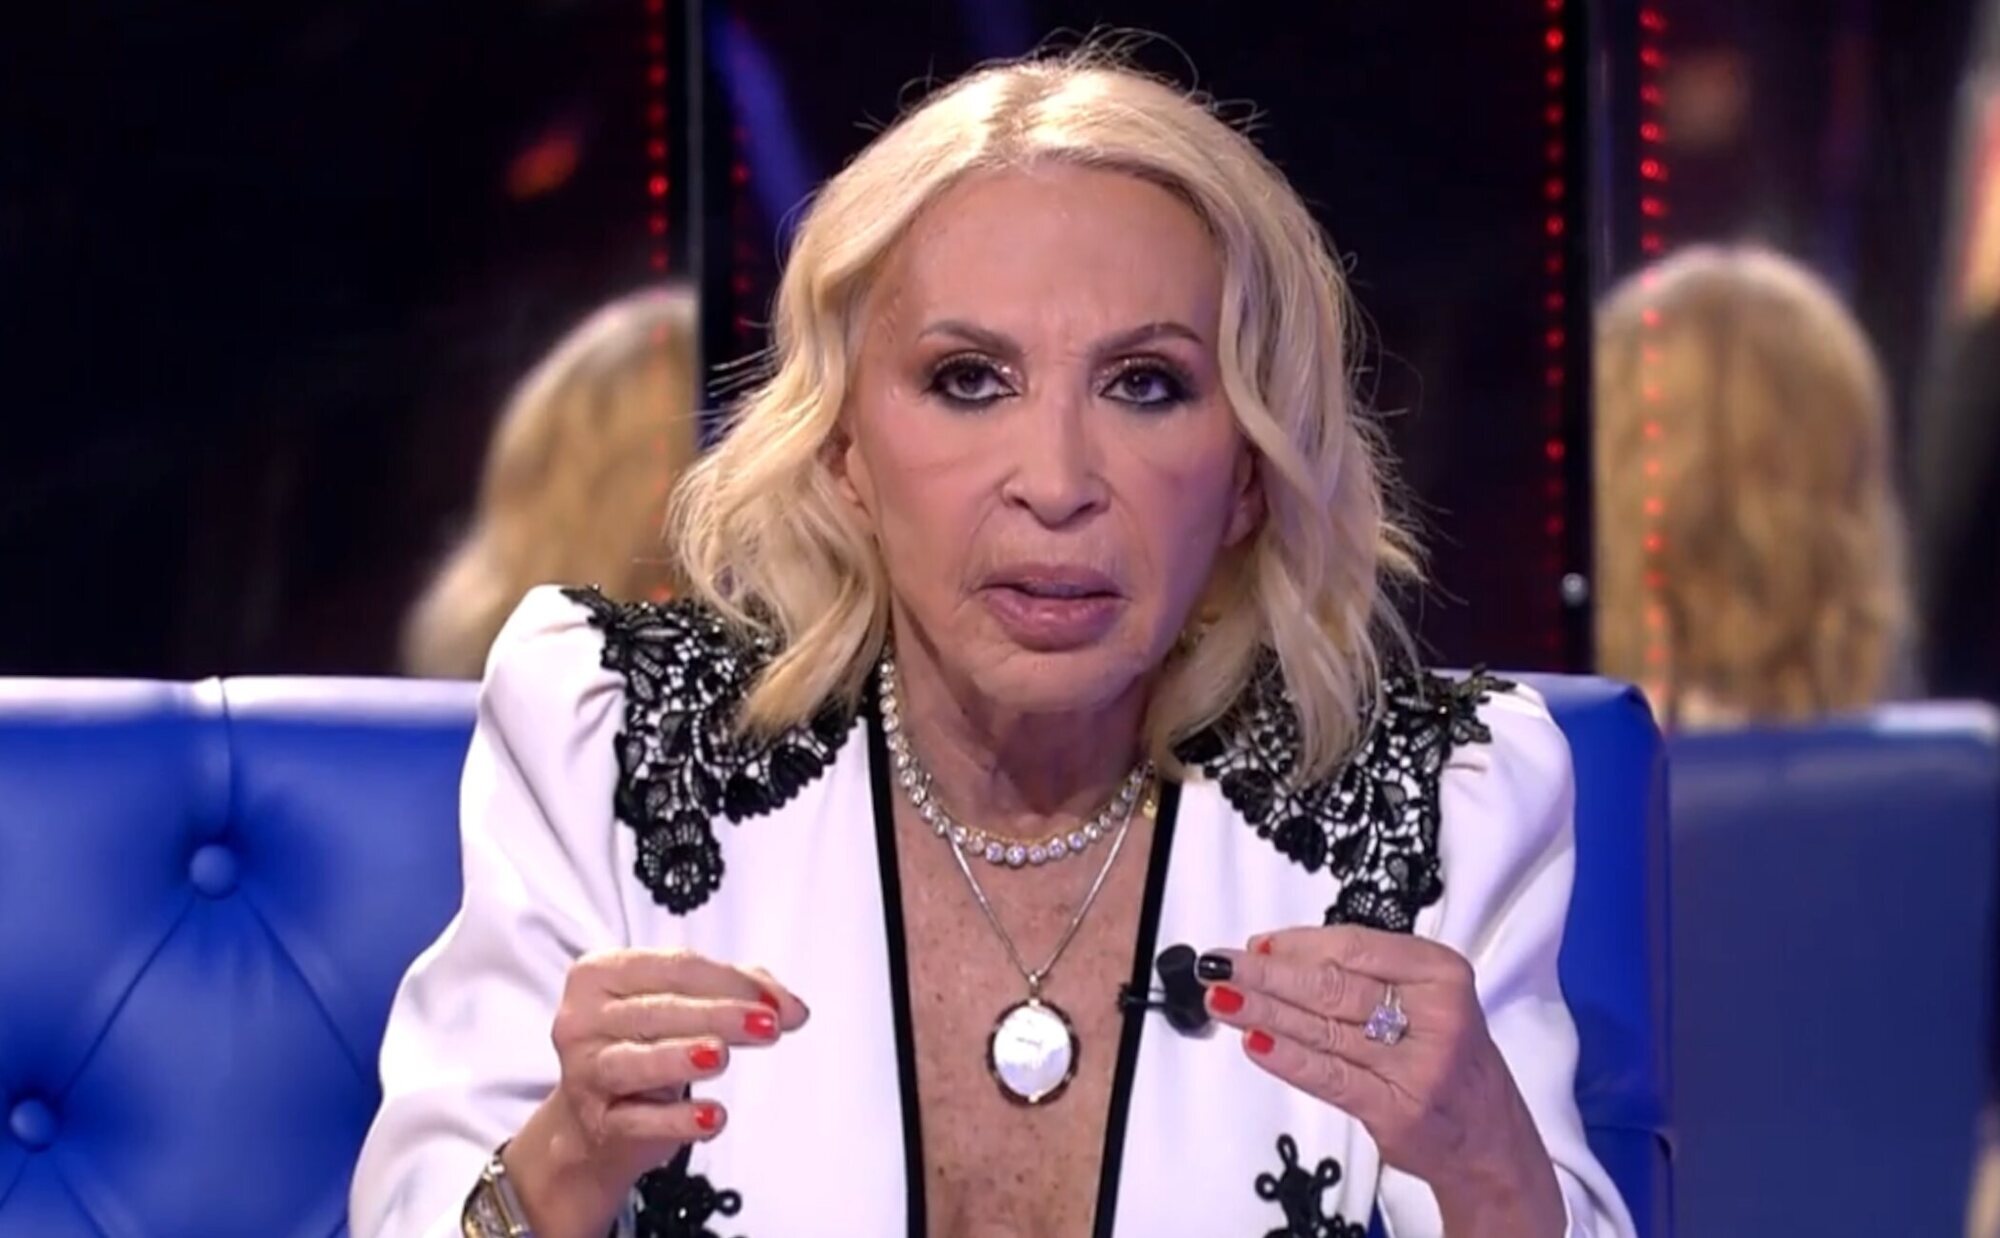 La fuerte discusión de Carmen Alcayde y Laura Bozzo en la final de 'GH VIP 8': "Eres una traidora de mierda"